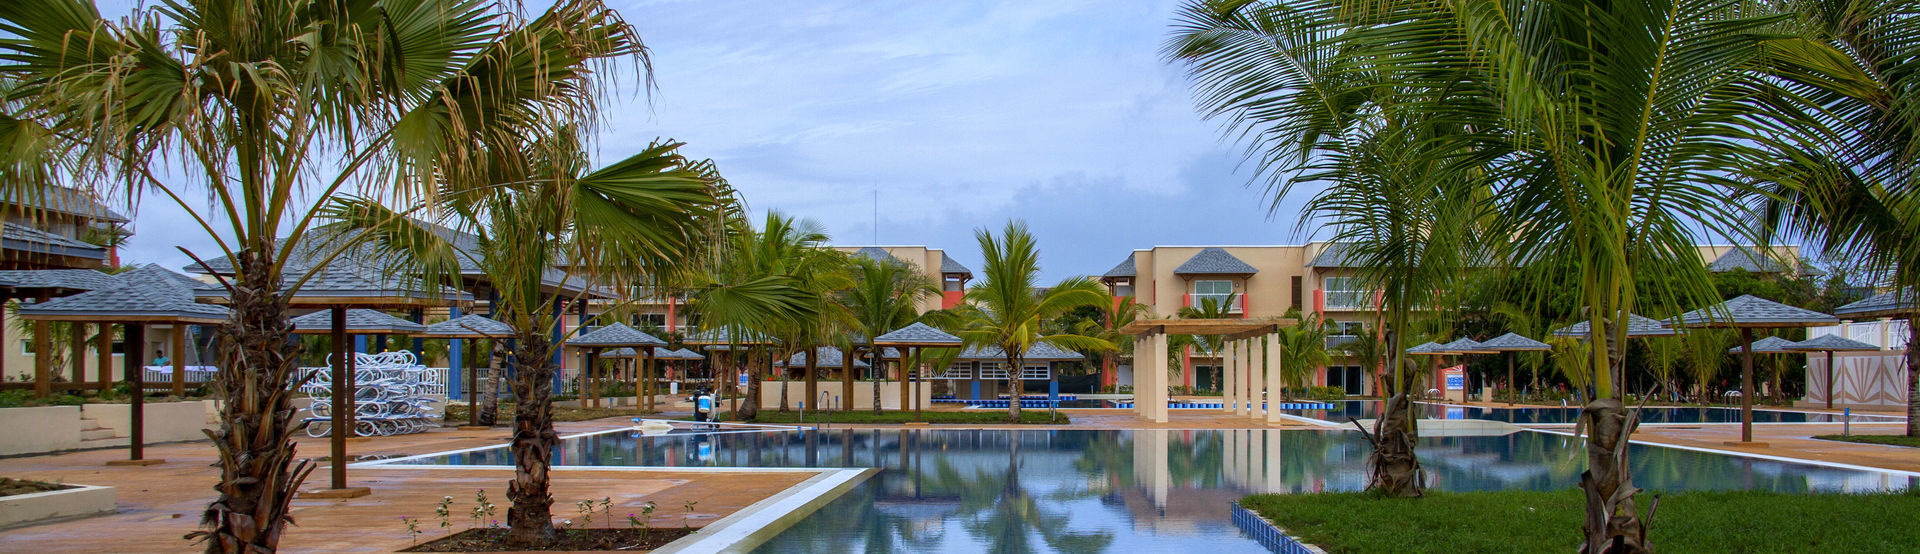 HOTELS - Hotels in Cuban Keys